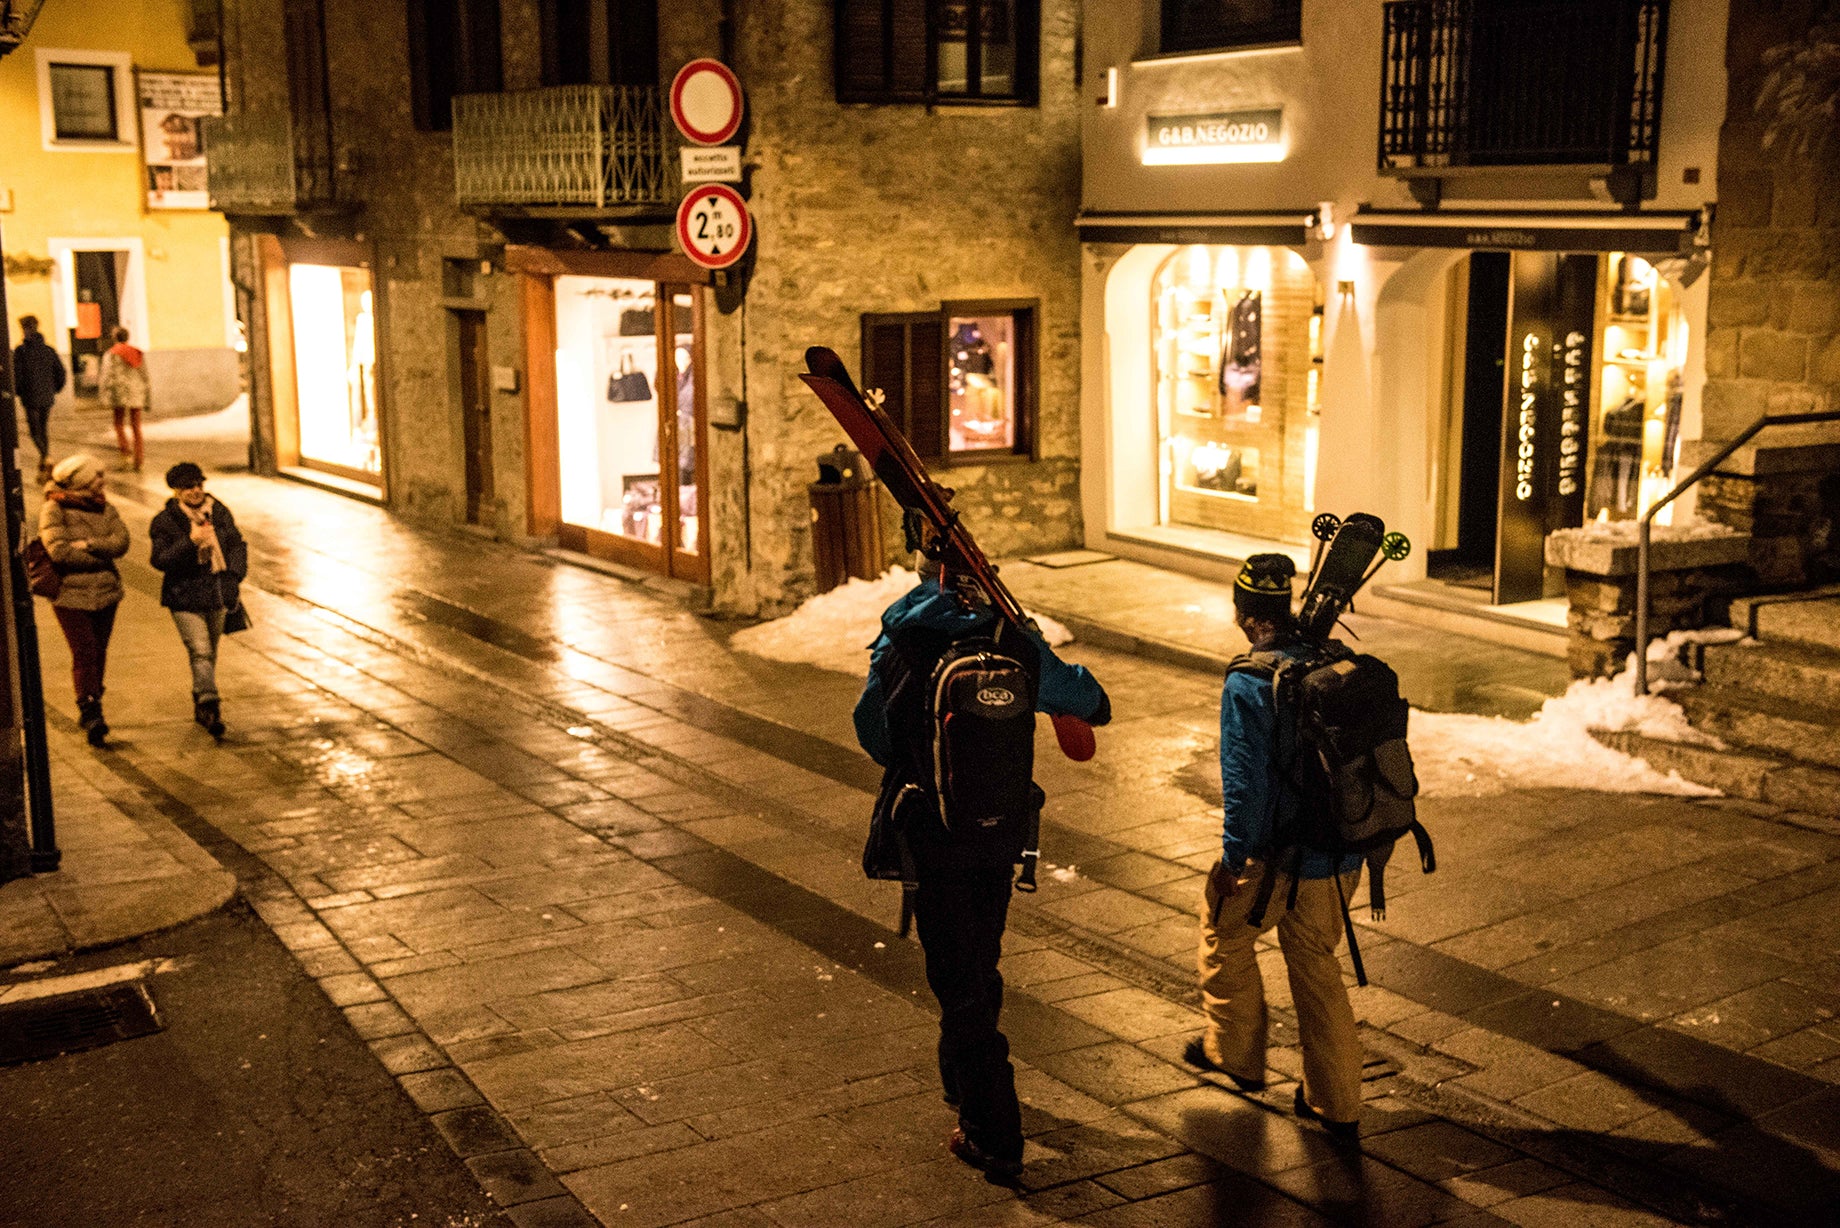 Skiers walking through town at night